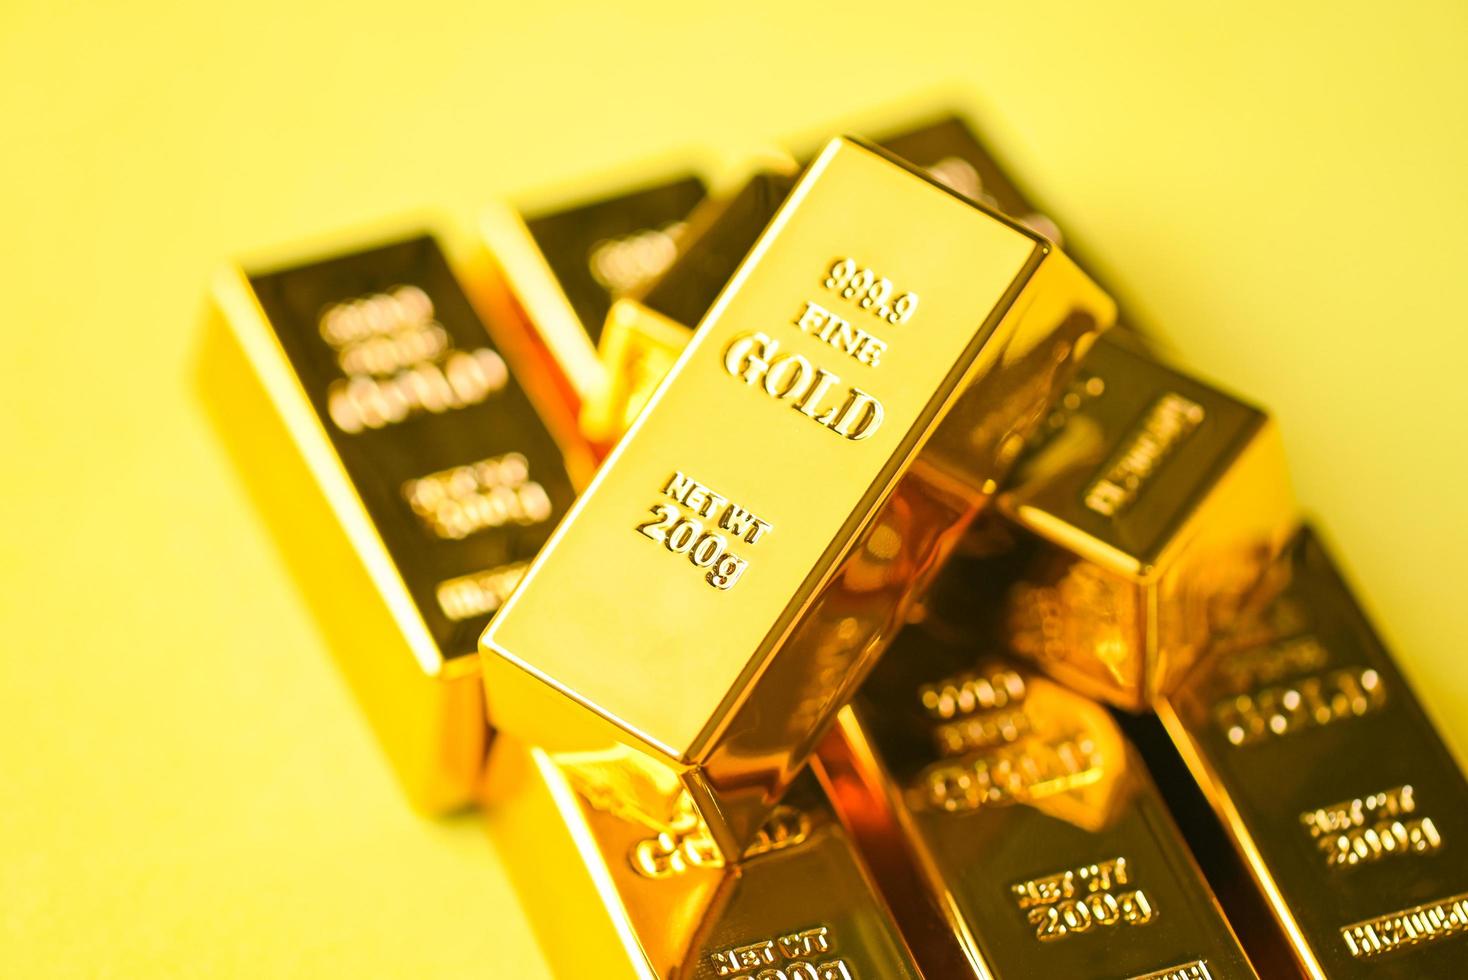 barras de oro sobre fondo amarillo, barras de oro conceptos de economía empresarial financiera, riqueza y éxito de reserva en negocios y finanzas foto